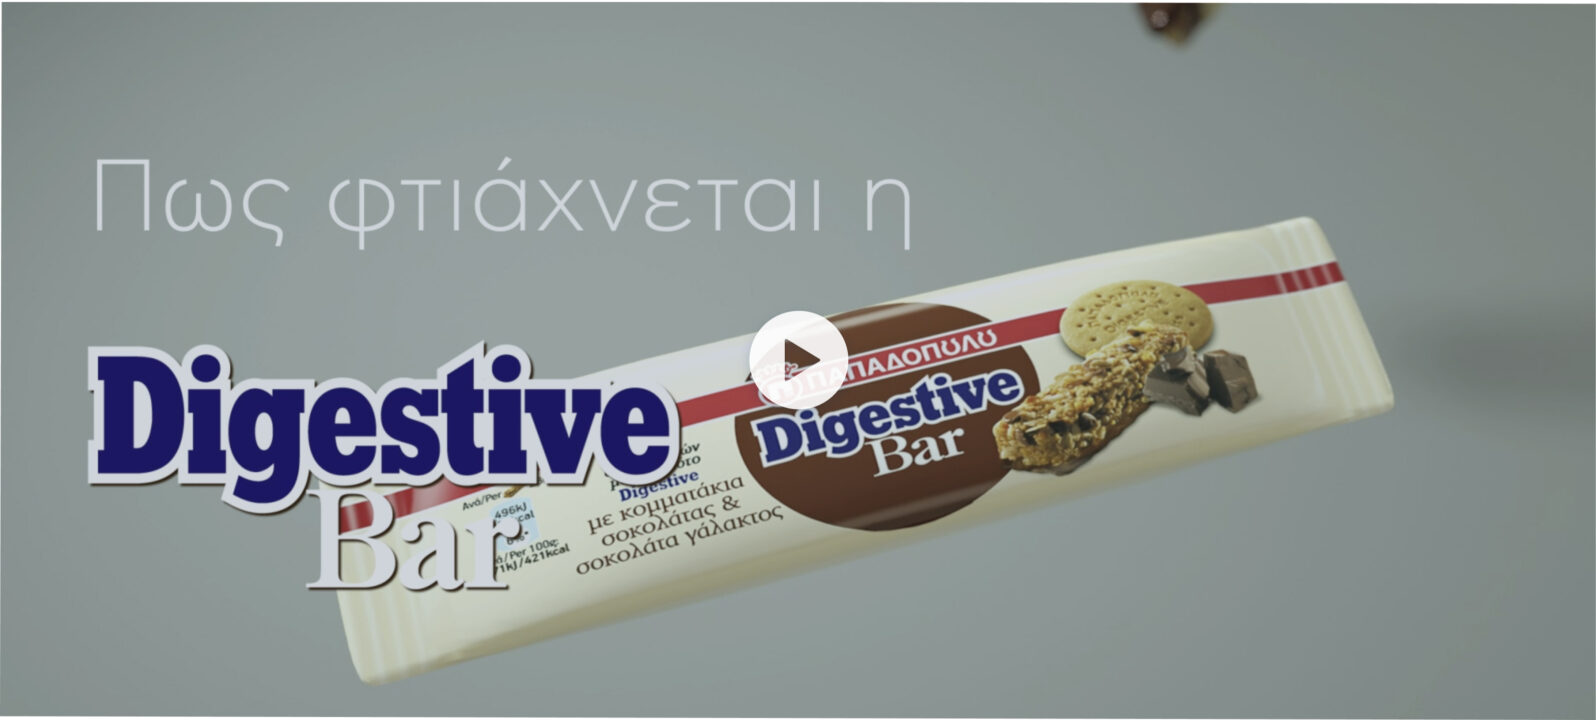 Πως φτιάχνεται η Digestive Bar